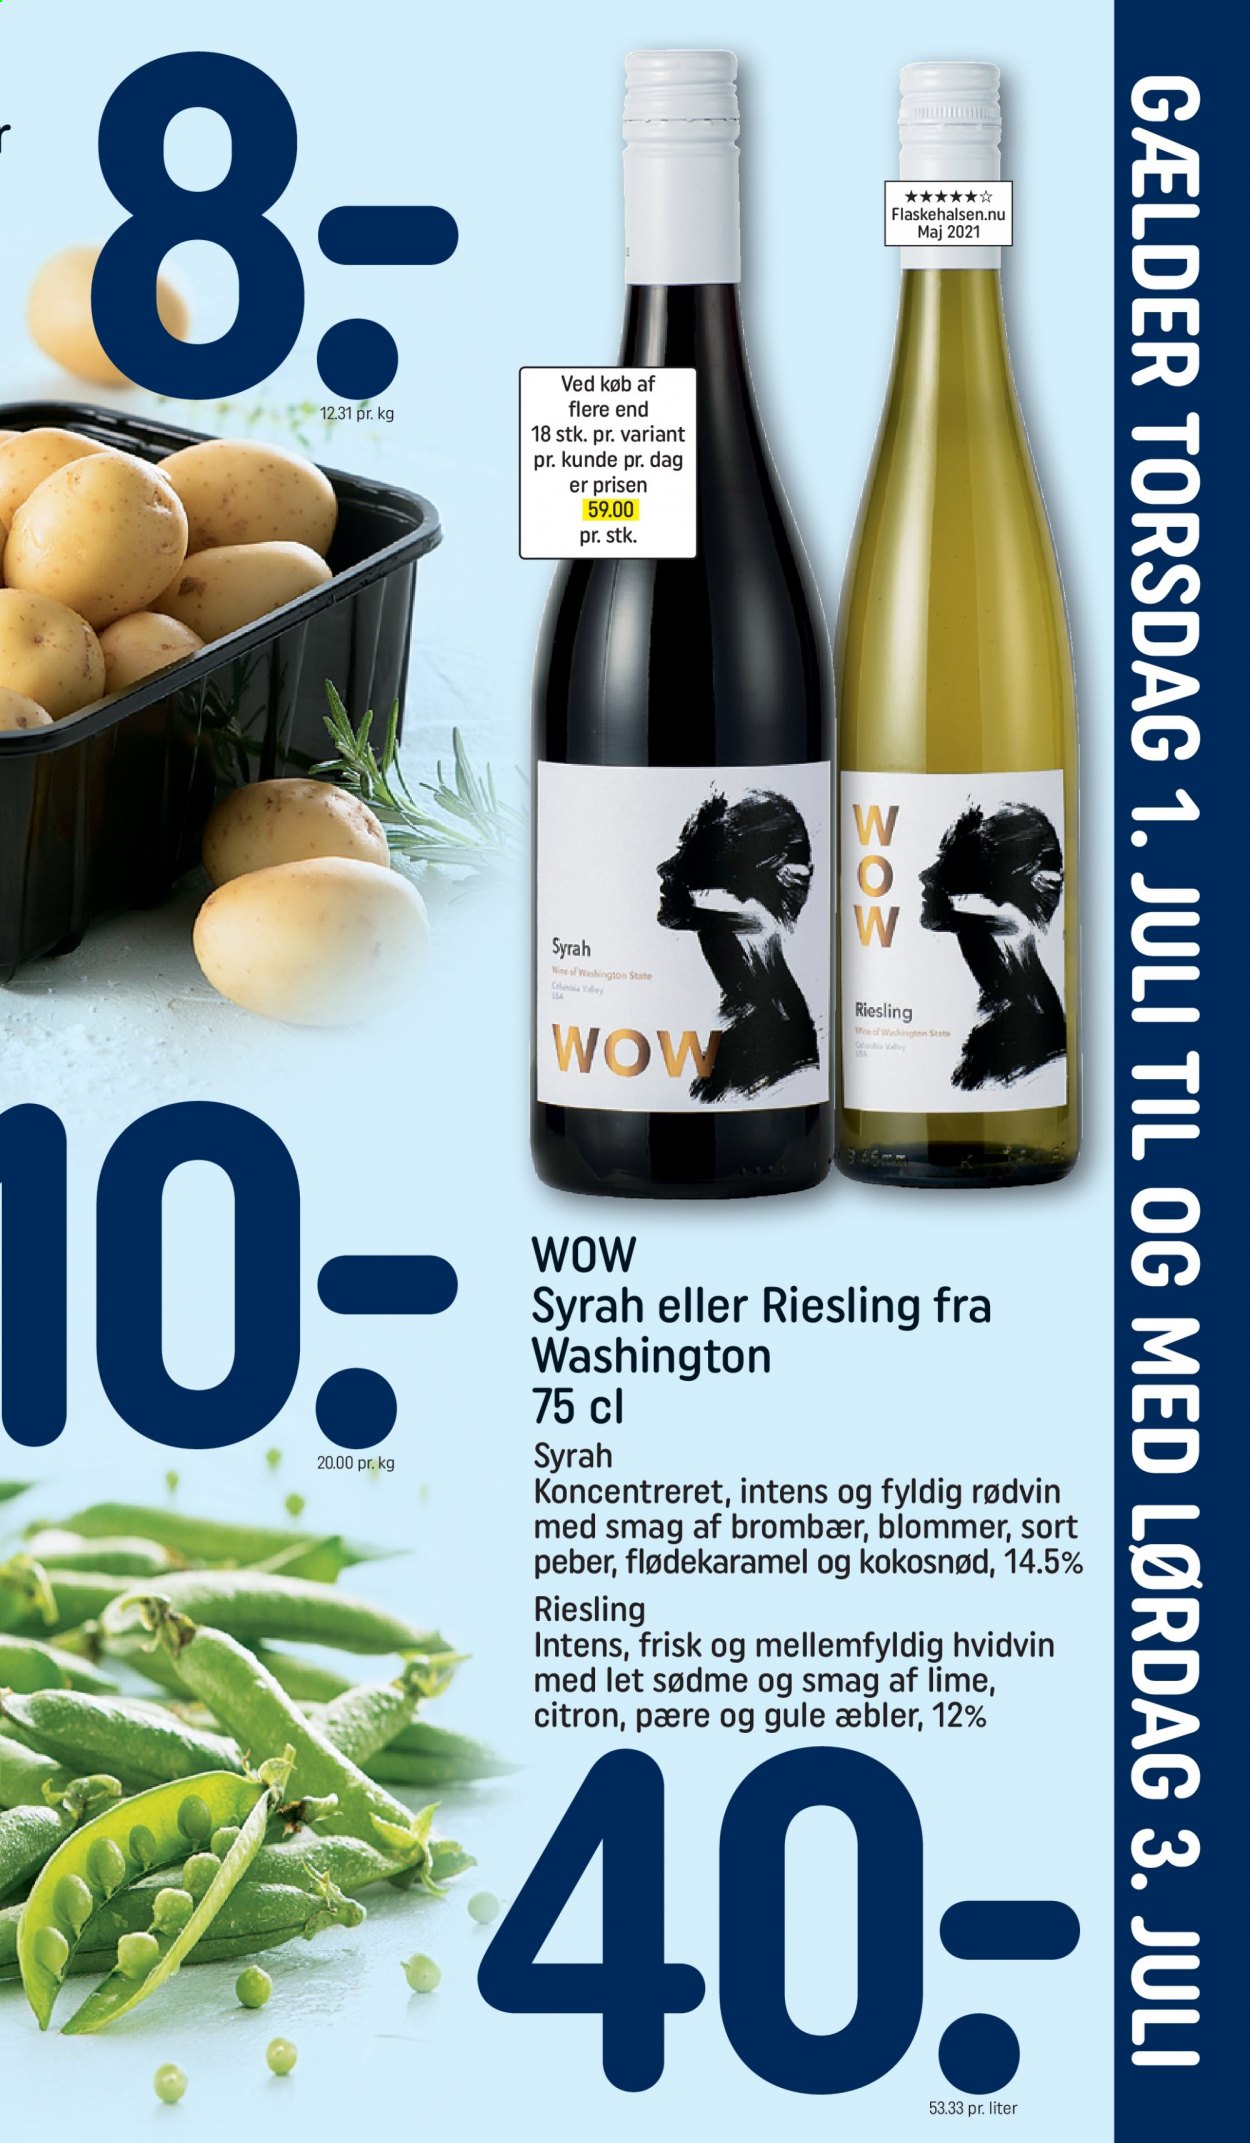 thumbnail - Rema 1000 tilbud  - 27.6.2021 - 3.7.2021 - tilbudsprodukter - æbler, blomme, Lime, hvidvin, Riesling, rødvin. Side 23.